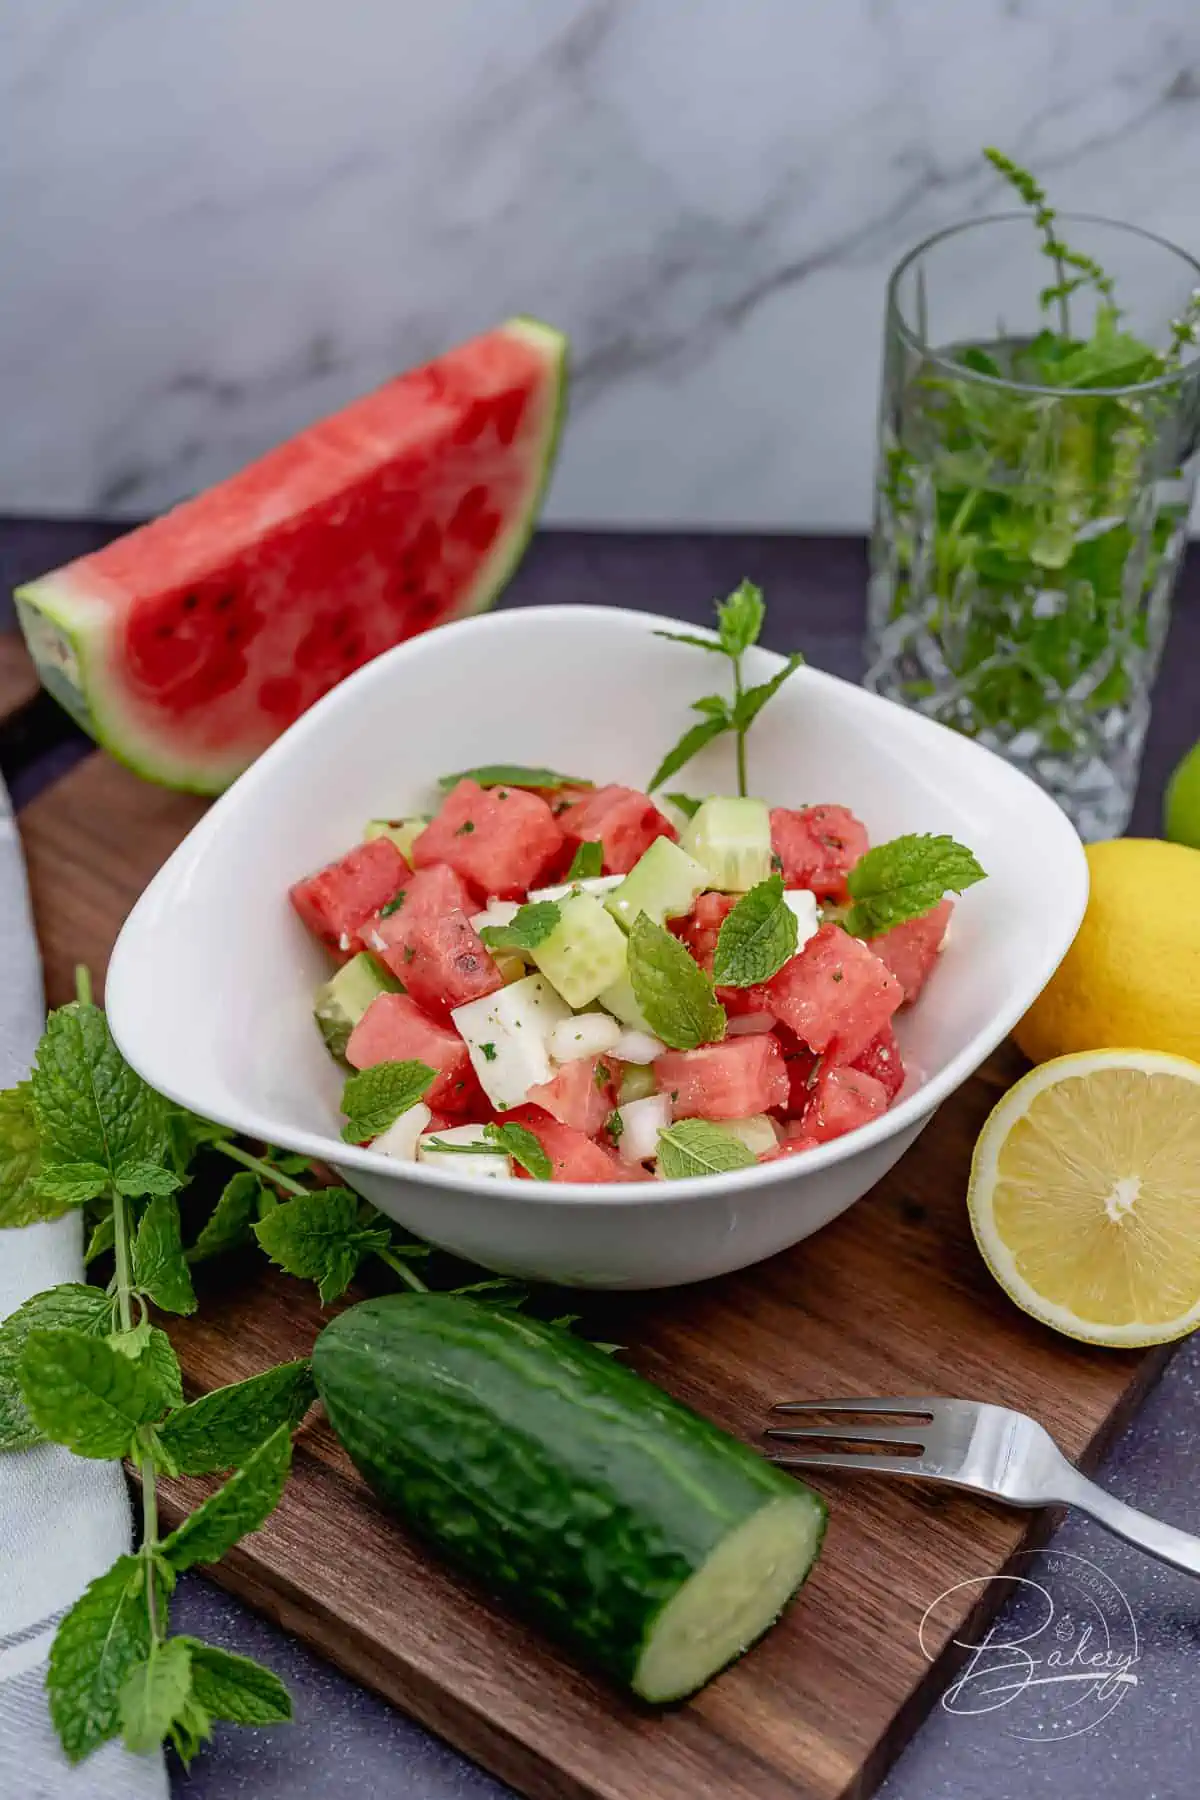 Fitness-Salat - Gesunder Salat mit Wassermelone, Gurke, Feta und frischer Minze - erfrischend und einfach